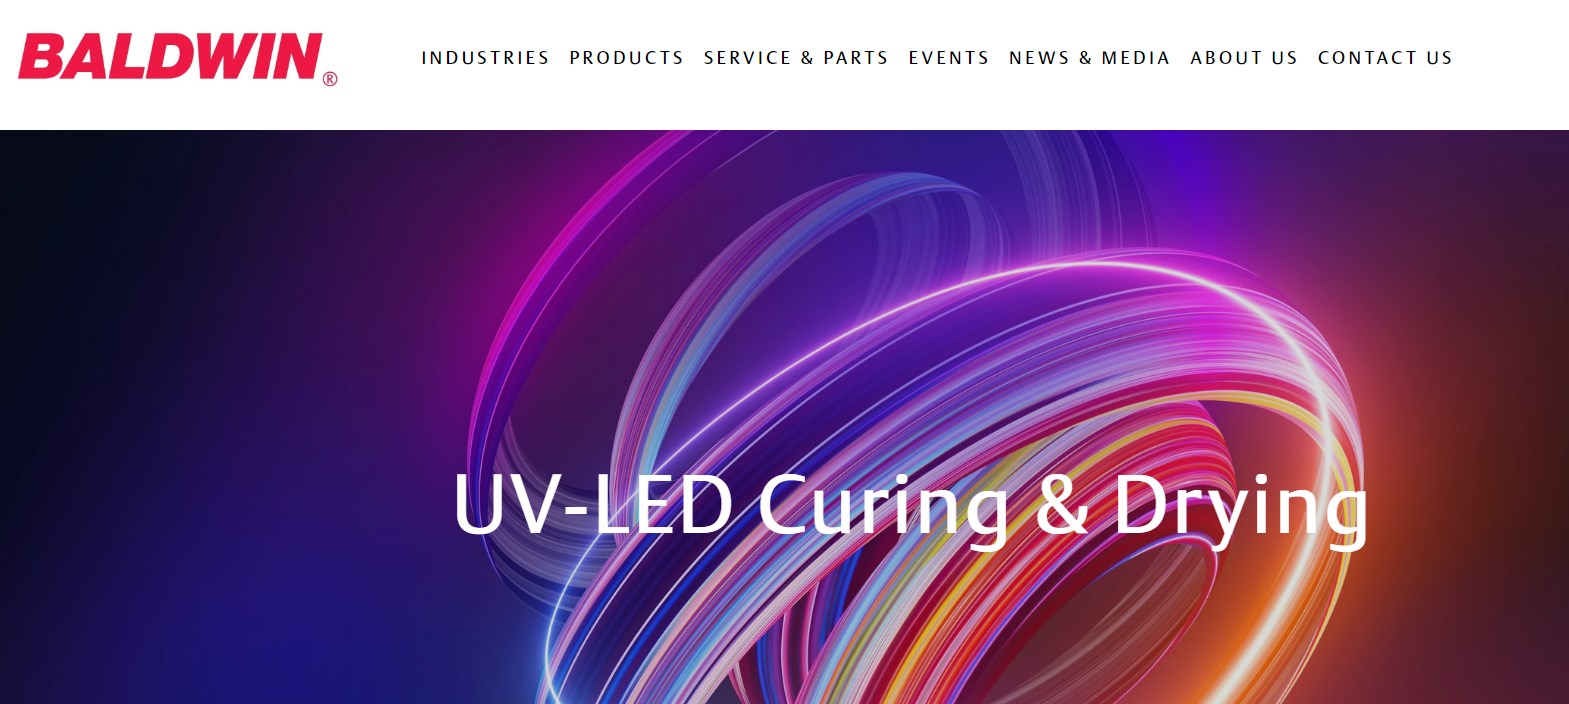 BALDWIN uv led curing system  manufacturer